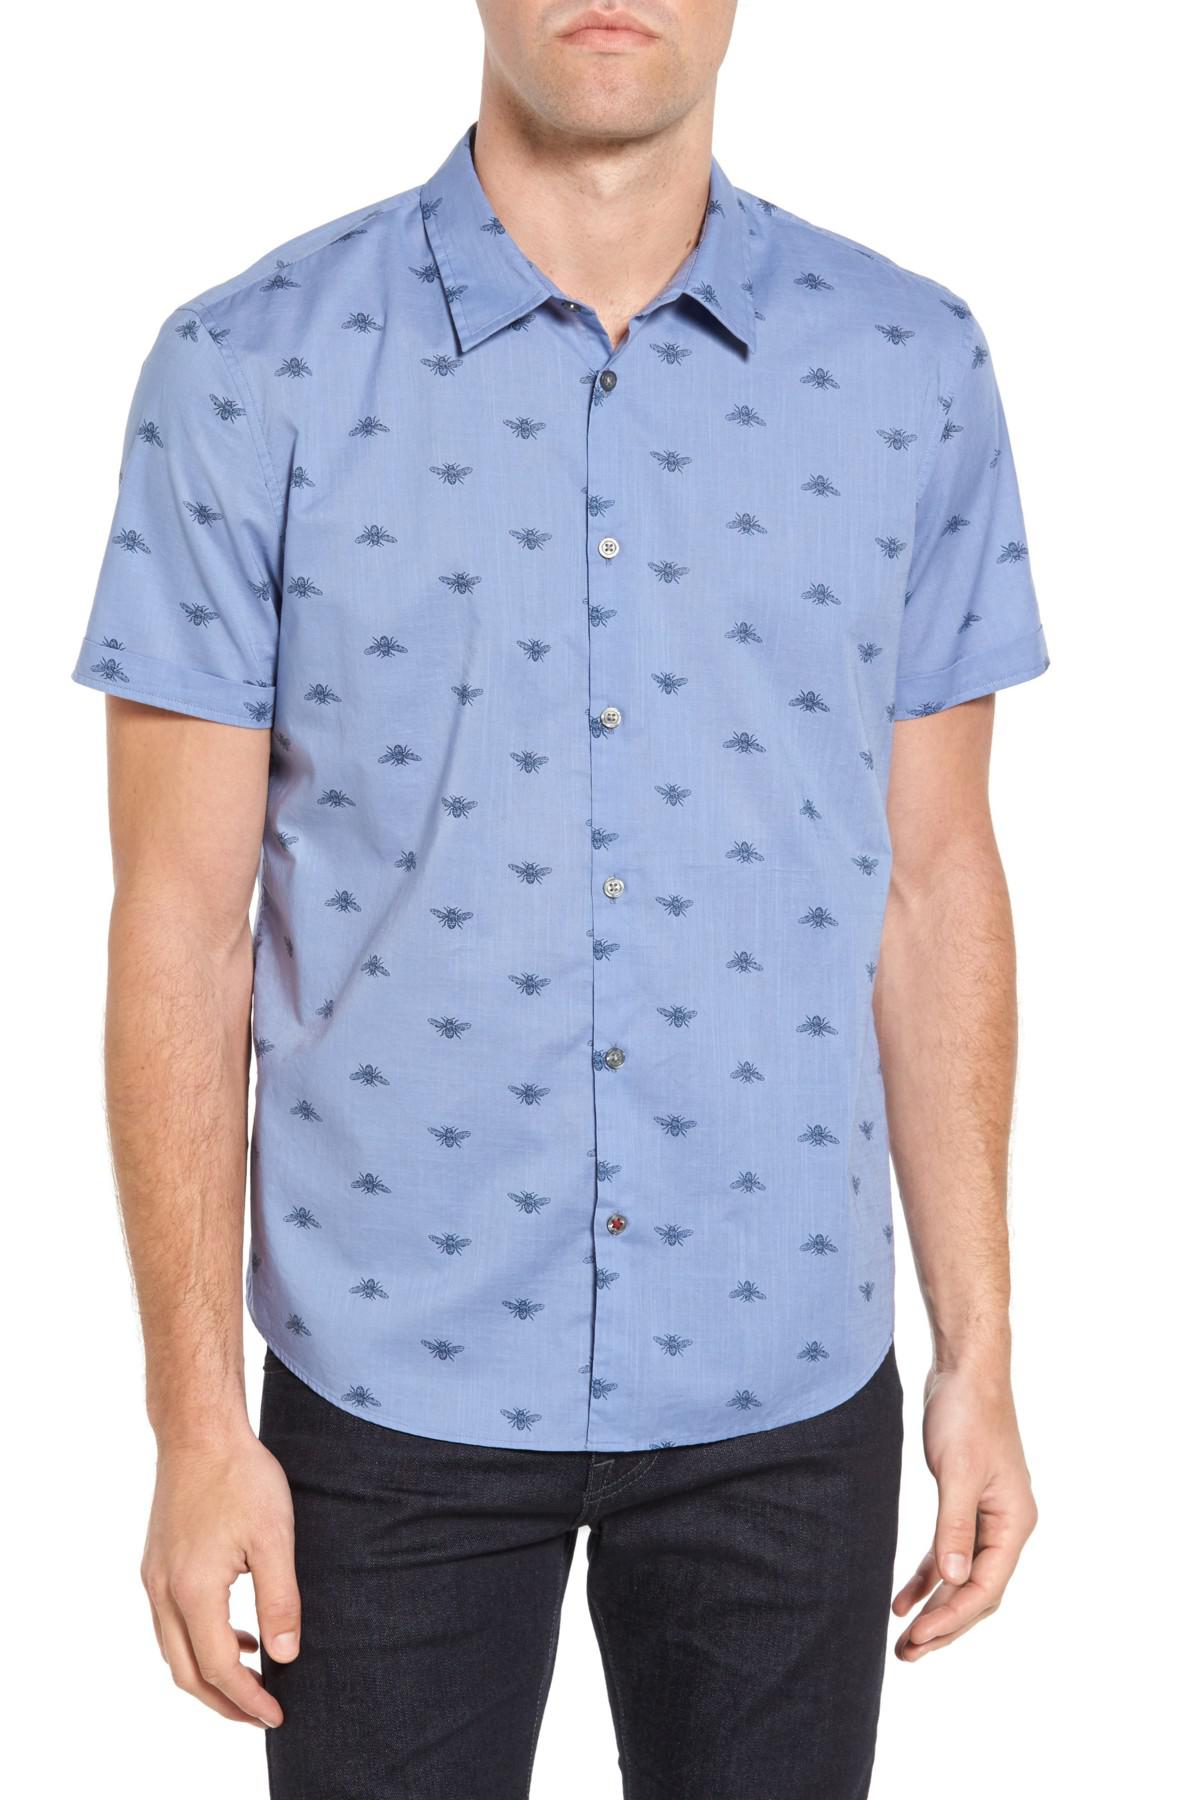 Lyst - John Varvatos Mayfield Slim Fit Sport Shirt in Blue for Men